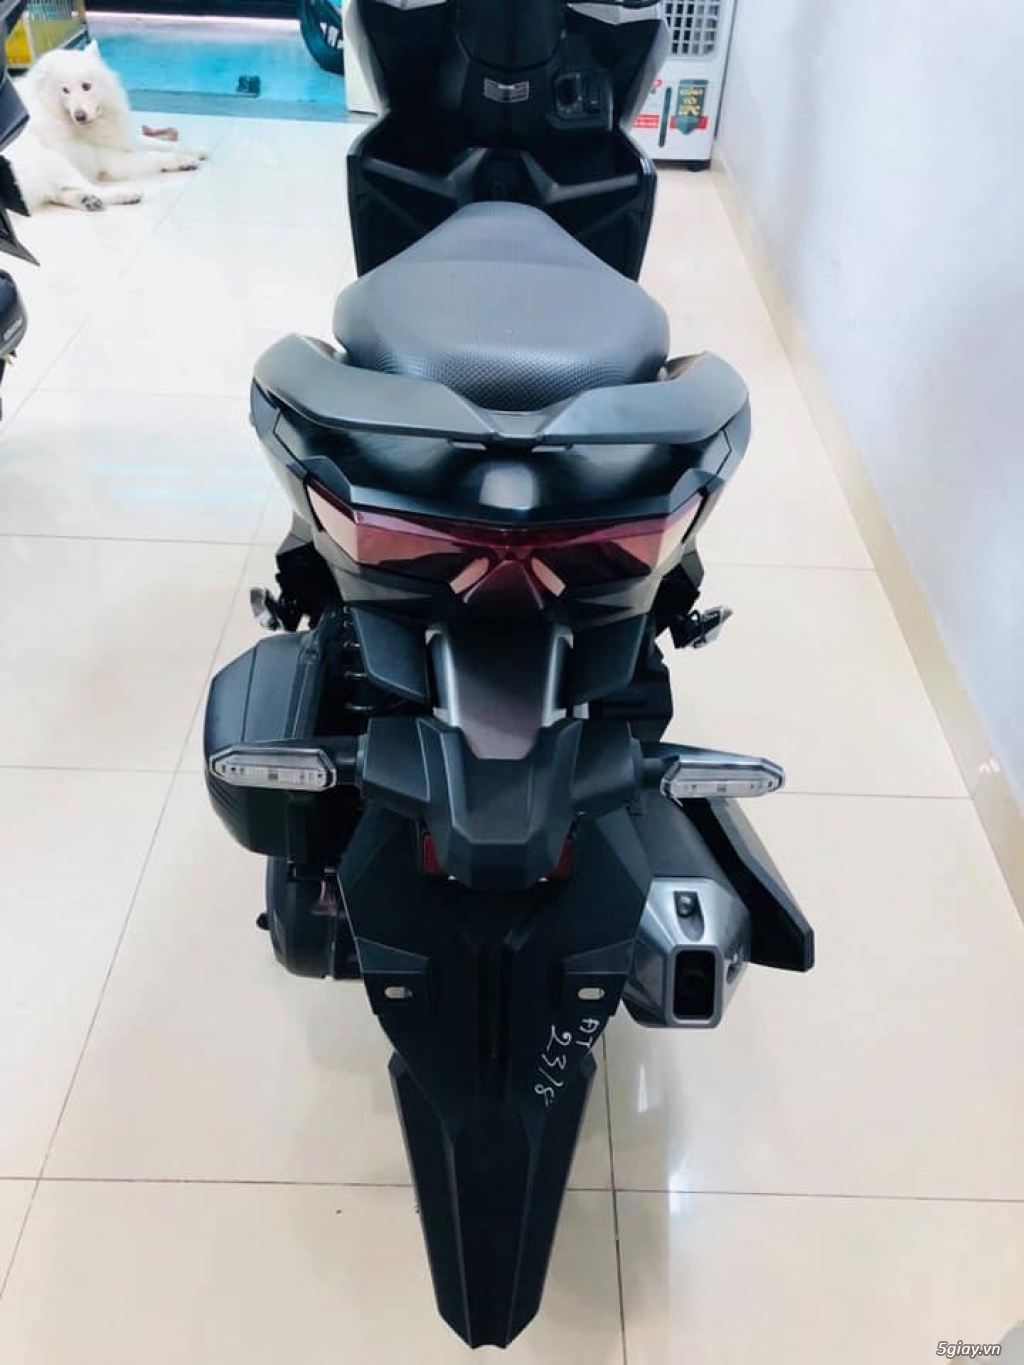 Cần bán Vario Xanh Nhám 150cc 2019, xe cực mới, giá êm dịu cho ace!!! - 2